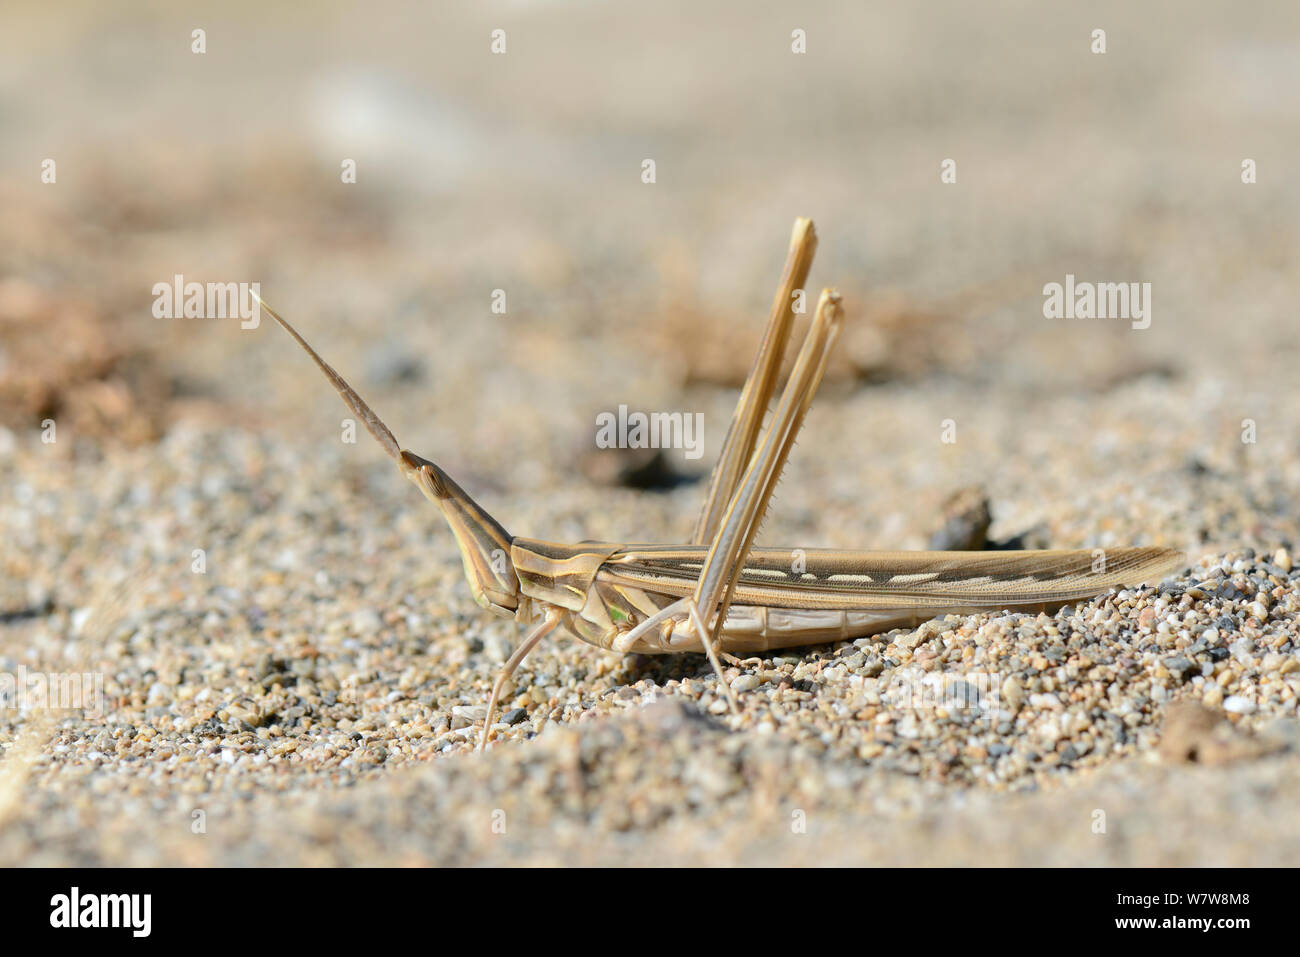 De hocico largo (Saltamontes Truxalis nasuta) bien camuflado en la arena cerca de la costa, Creta, Grecia, en mayo. Foto de stock